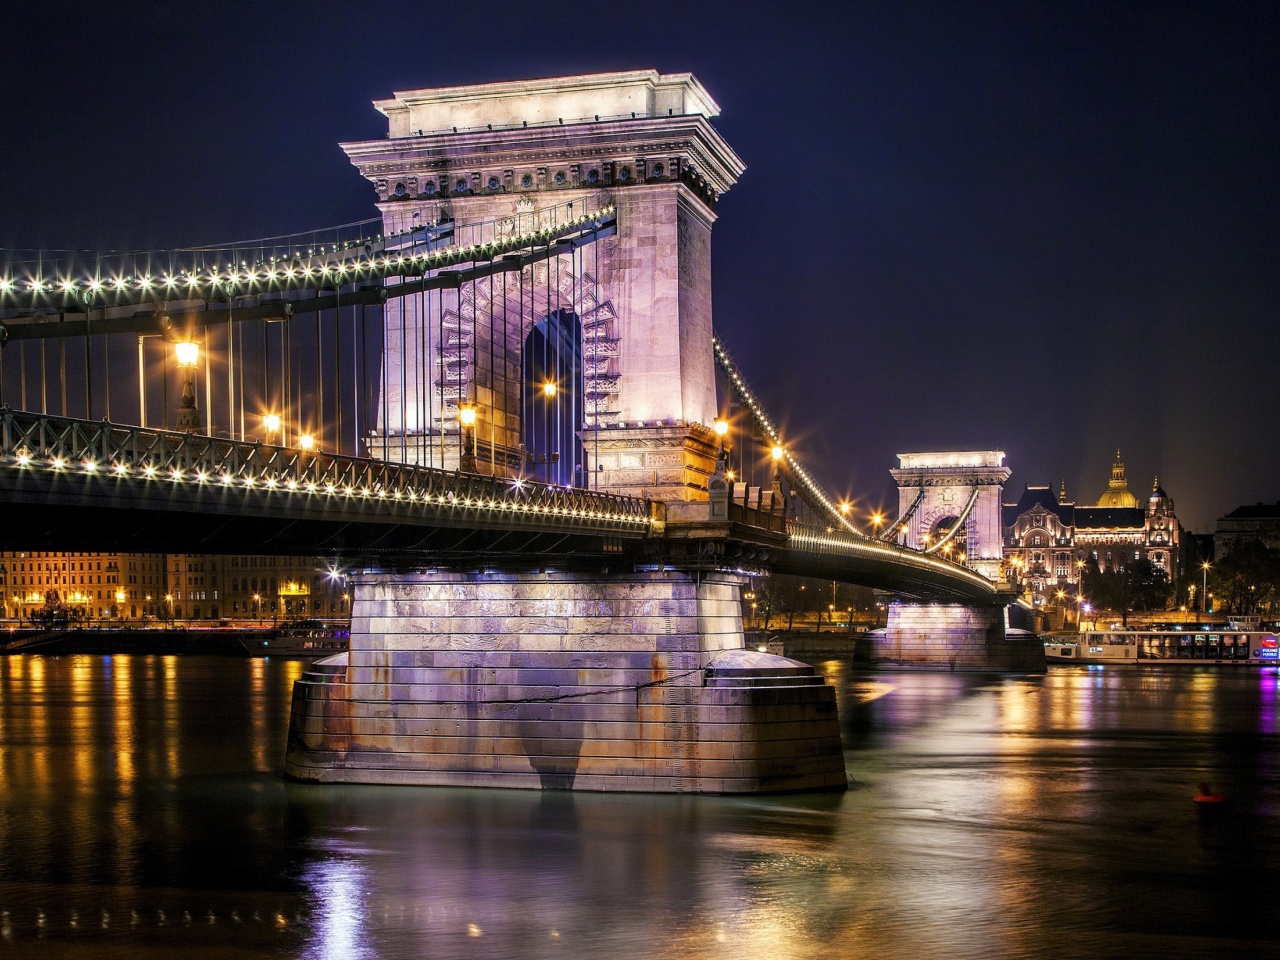 Das Chain Bridge in Budapest on Danube Wallpaper 1280x960